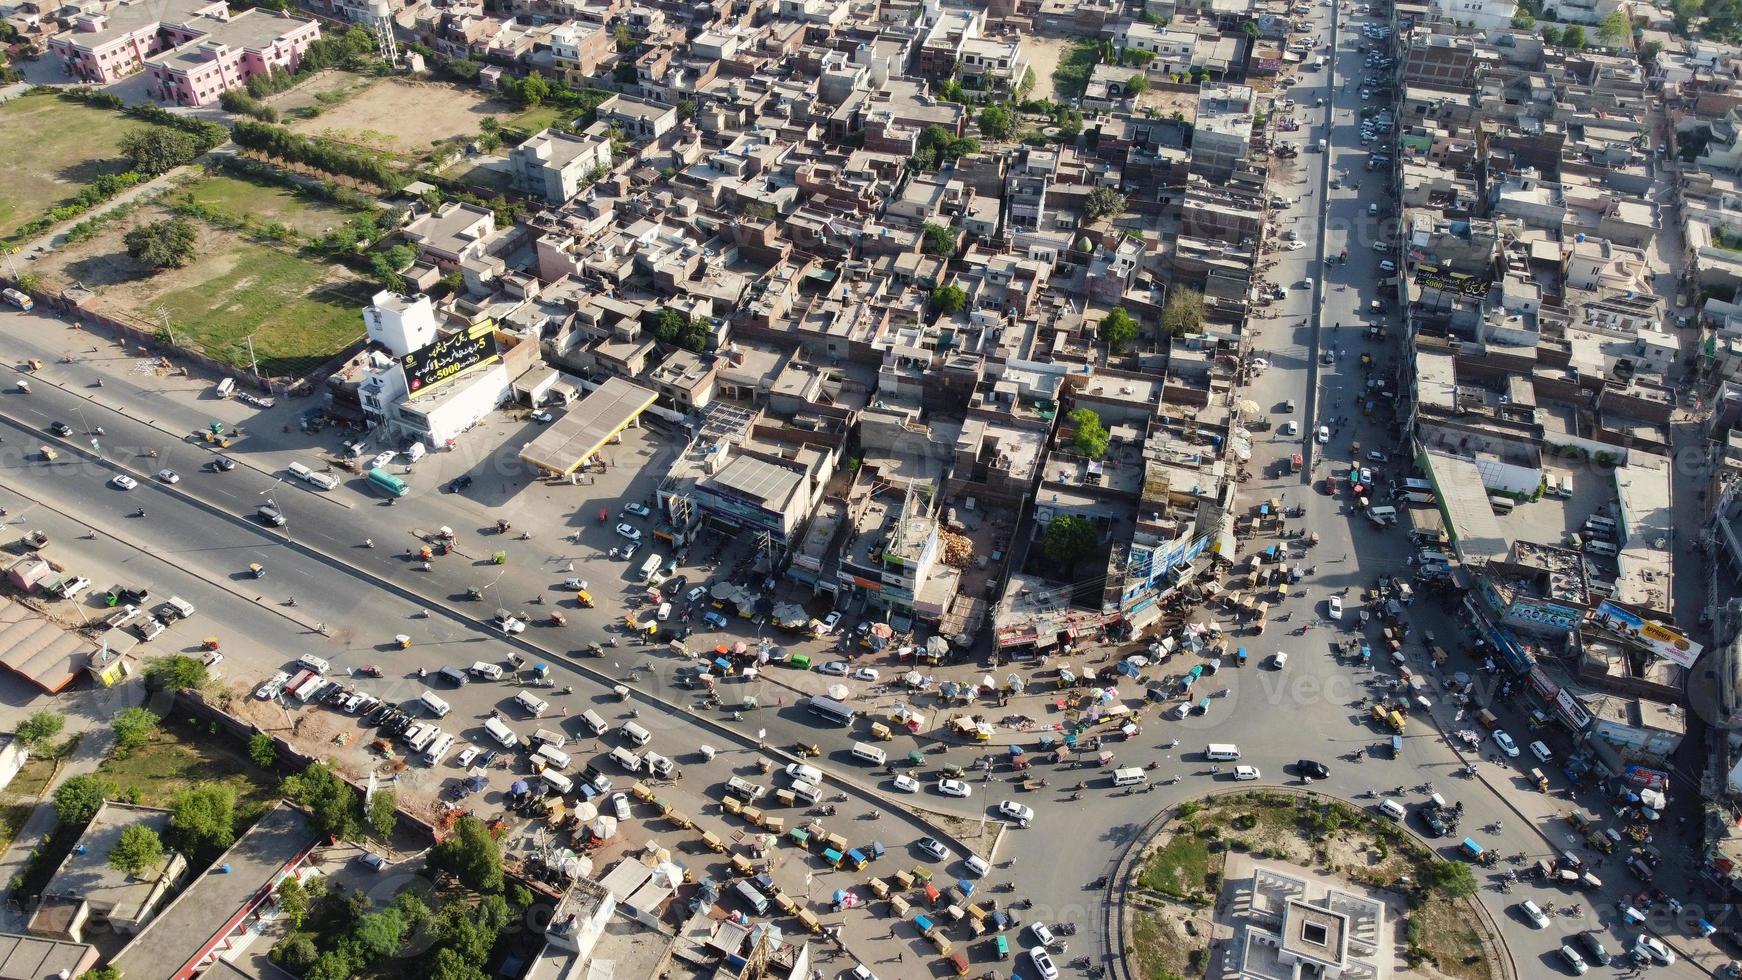 vista aérea de alto ângulo da cidade de sheikhupura de punjab paquistão, imagens do drone. sheikhupura também conhecido como qila sheikhupura, é uma cidade na província paquistanesa de punjab. foto